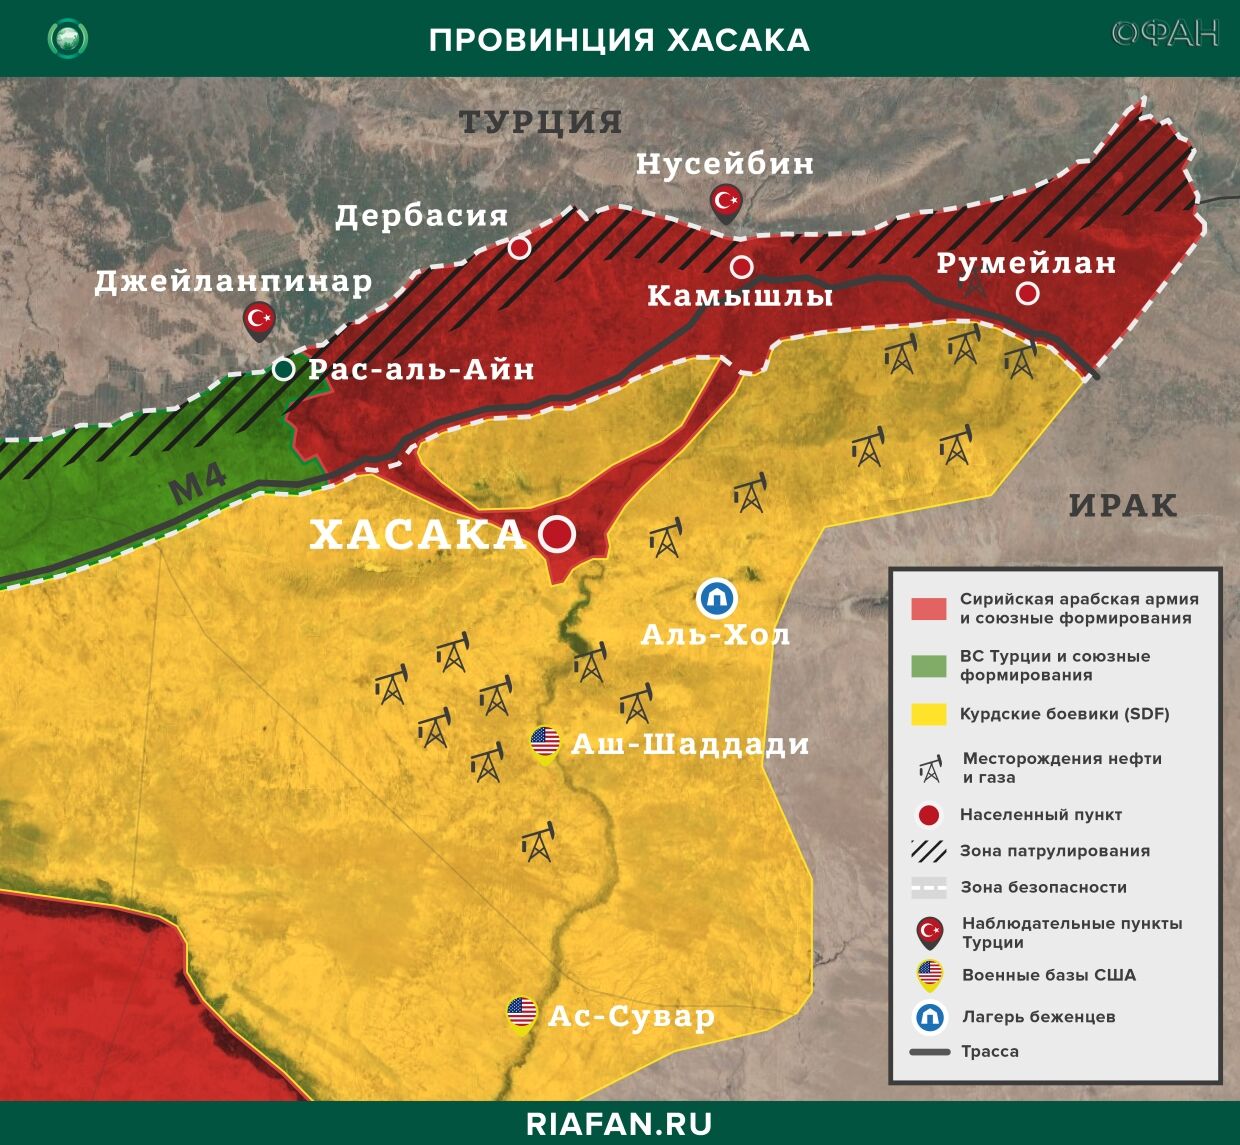 Noticias de Siria 21 Marzo 07.00: курдских боевиков обвиняют в освобождении террористов ИГ, 4 члена SDF погибли в Дейр-эз-Зоре